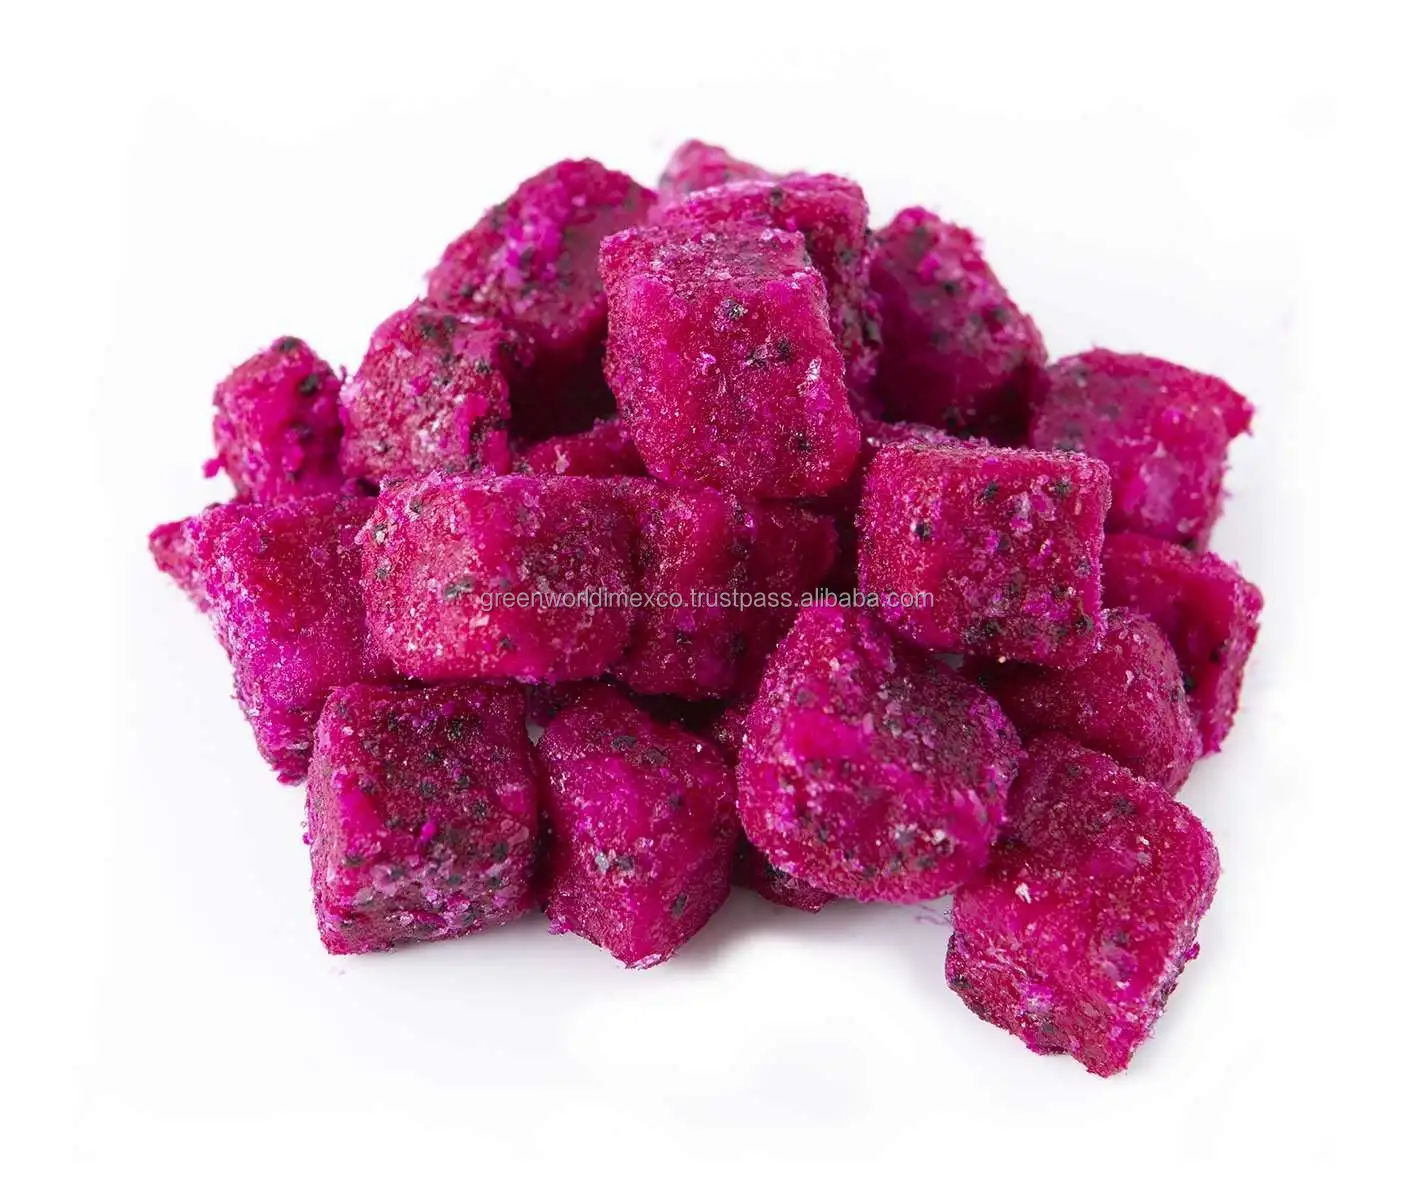 Frutta di drago congelata/IQF rosa PITAYA con il prezzo più basso dal VIETNAM-dadi/cubo o metà di frutta di drago rosso congelato